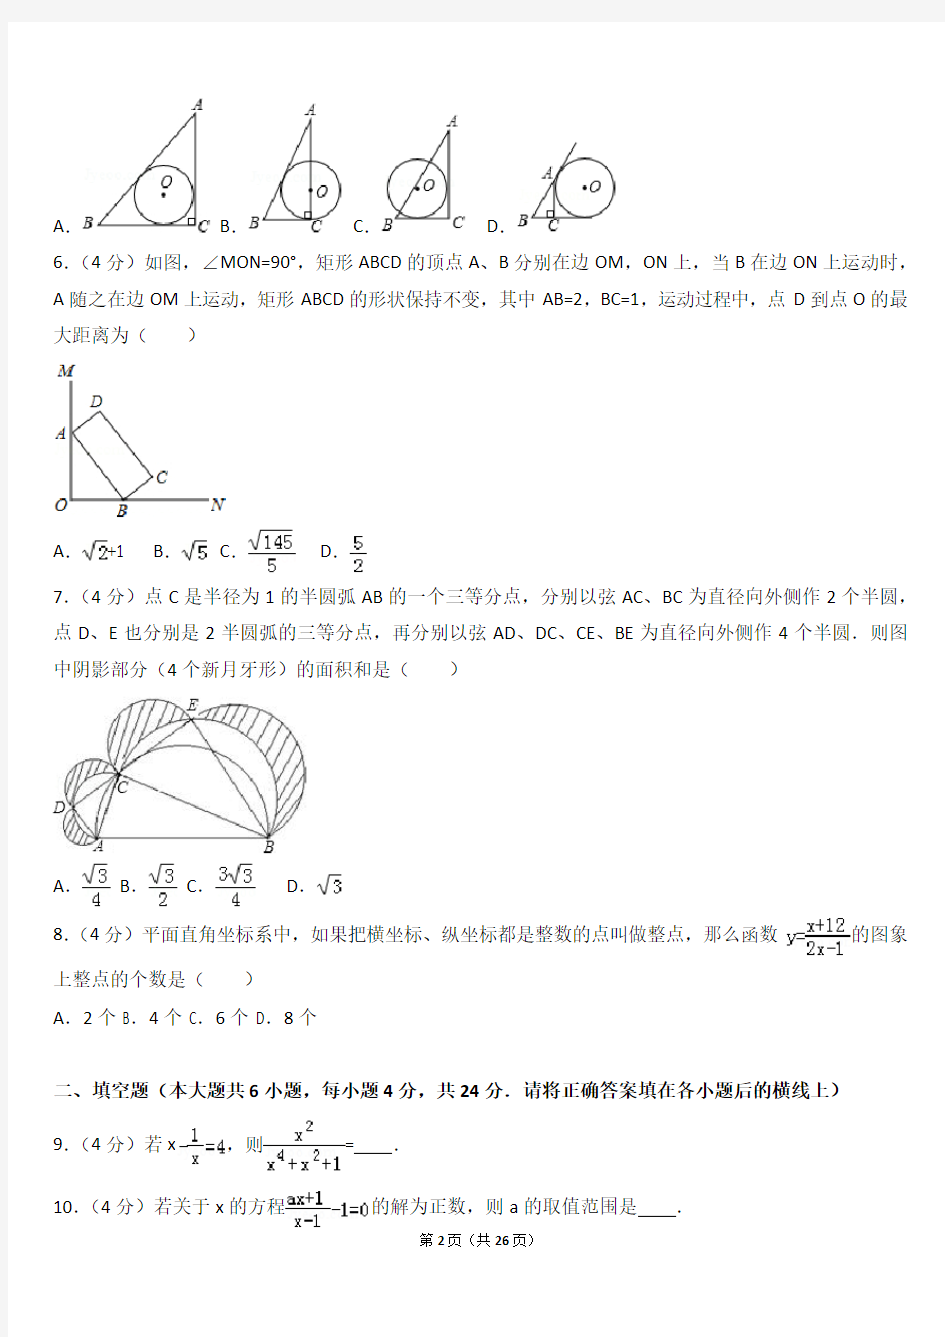 2015年湖北省黄冈中学提前录取数学模拟试卷7